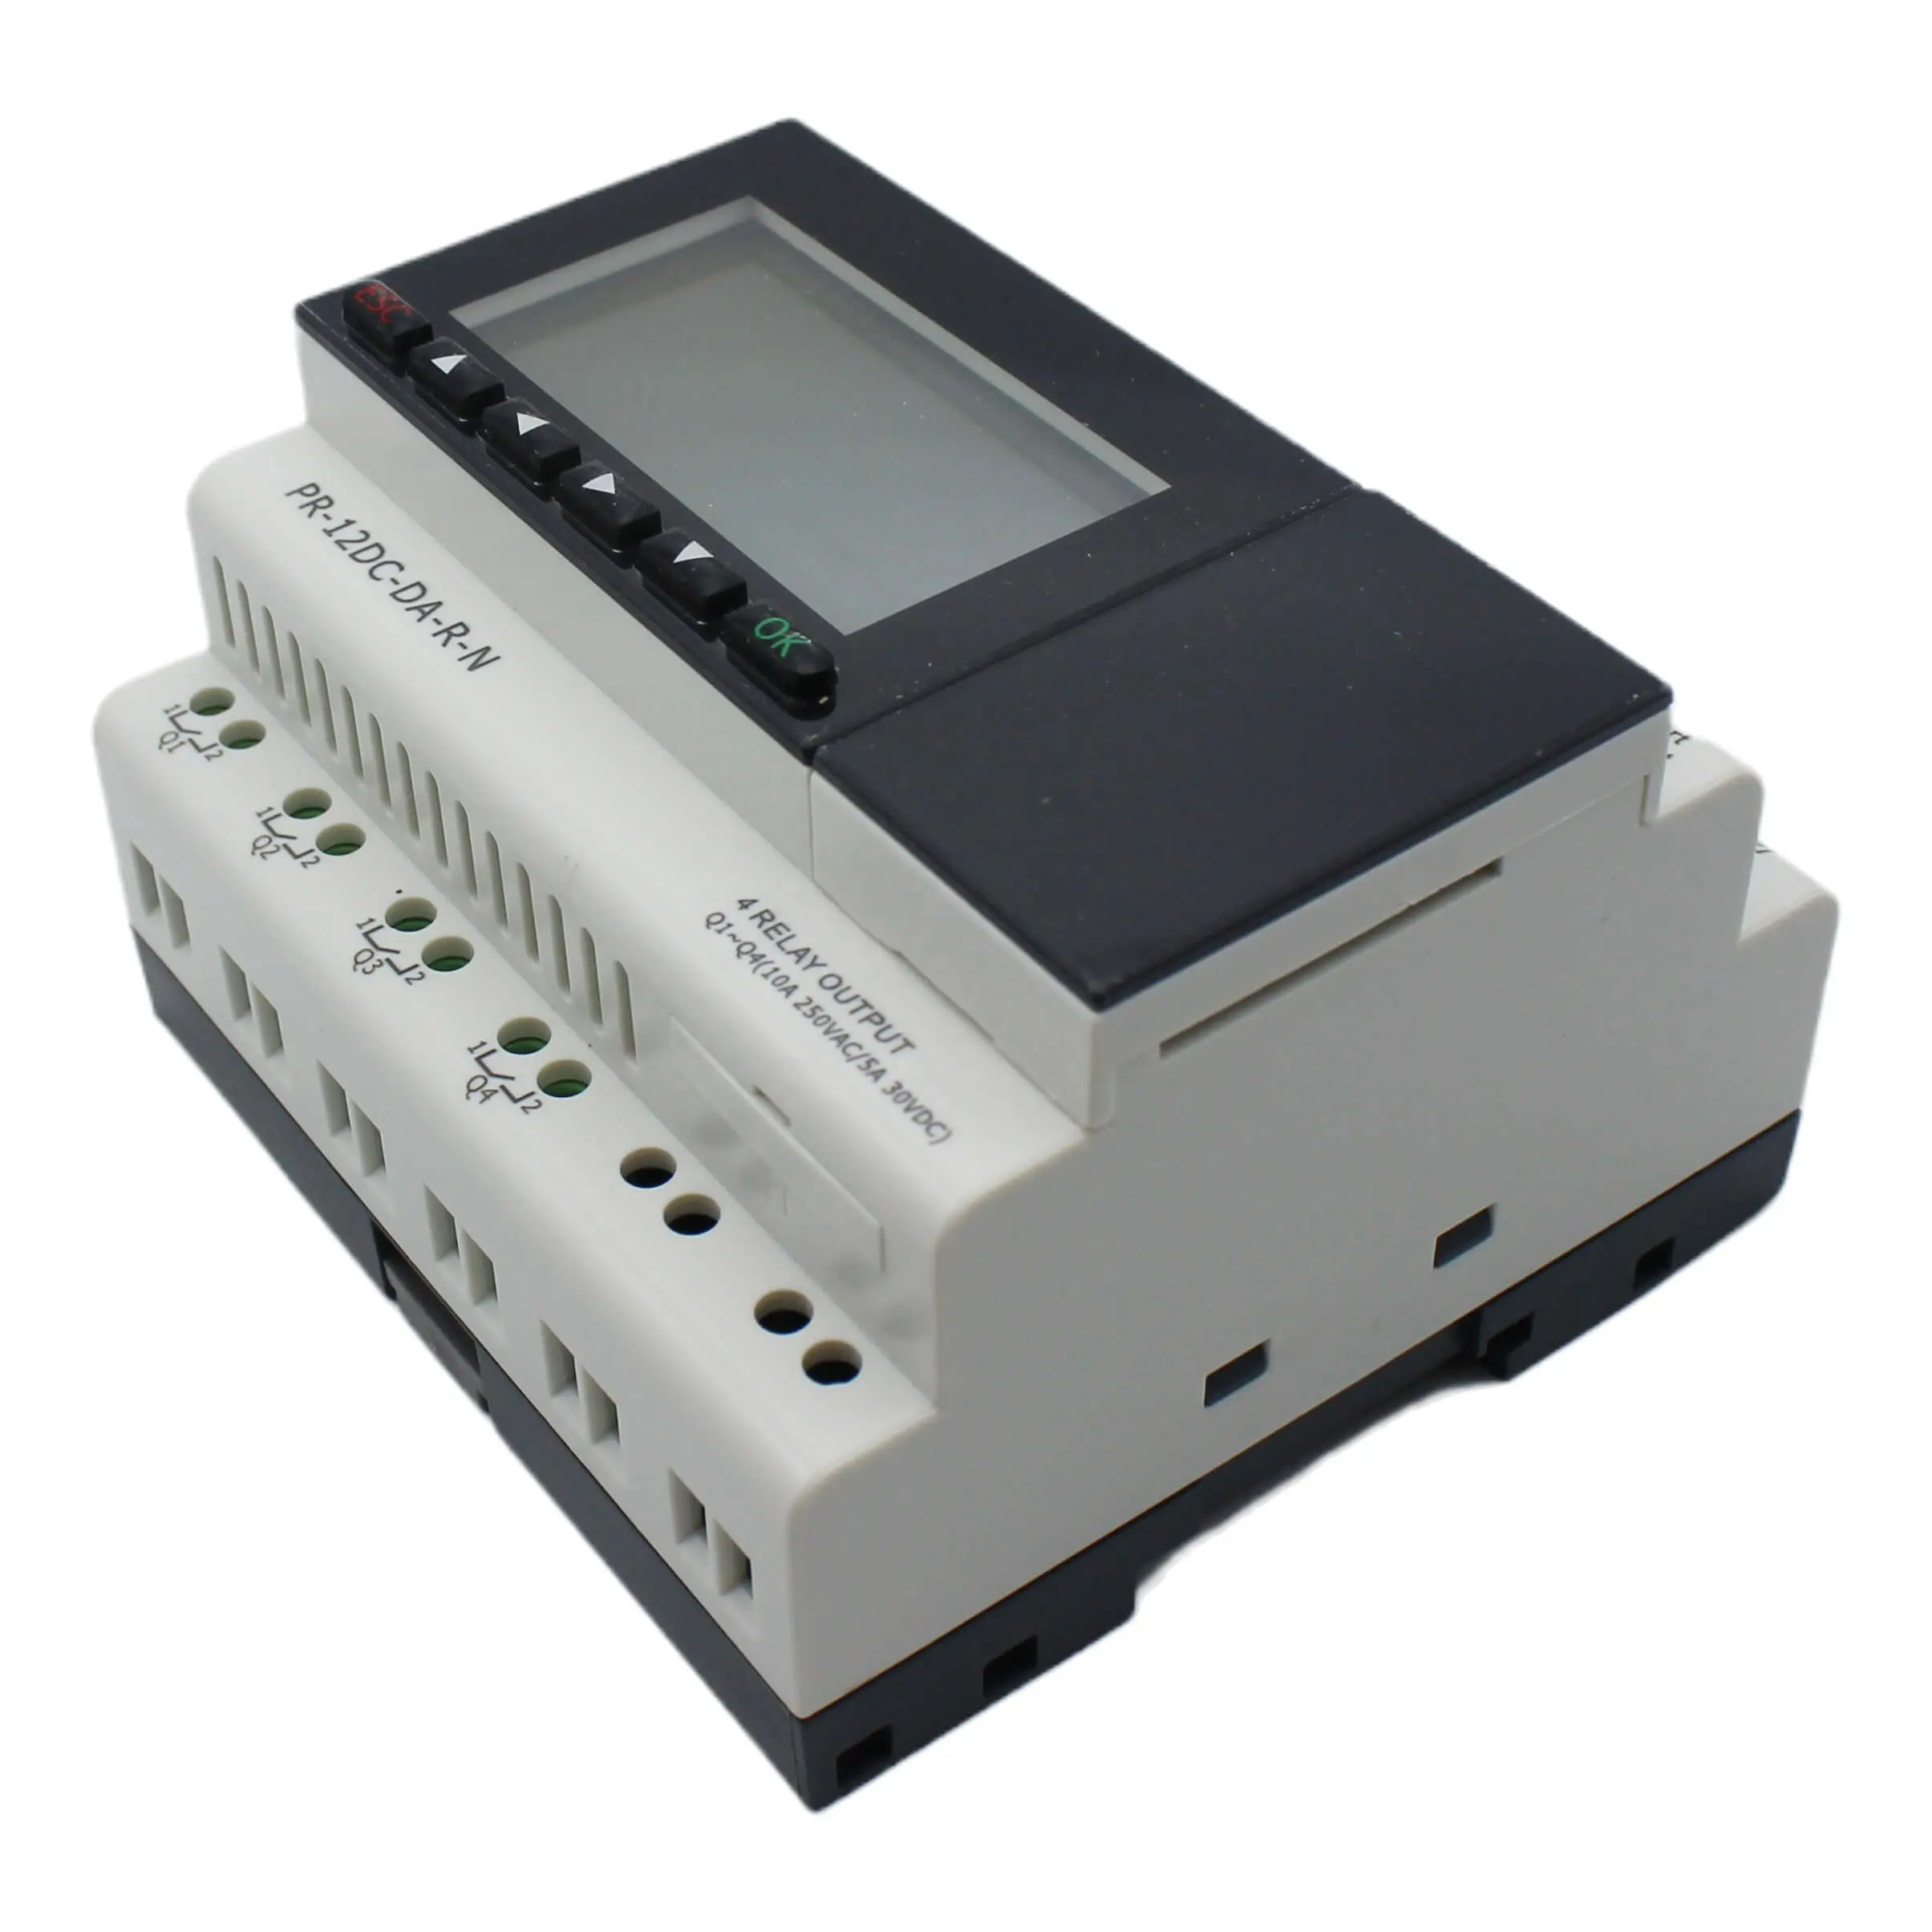 PR-12DC-DA-R-N PLC 4 relay 12-24V 4DI plc hmi controller spliert apc plc jap screen pin programming